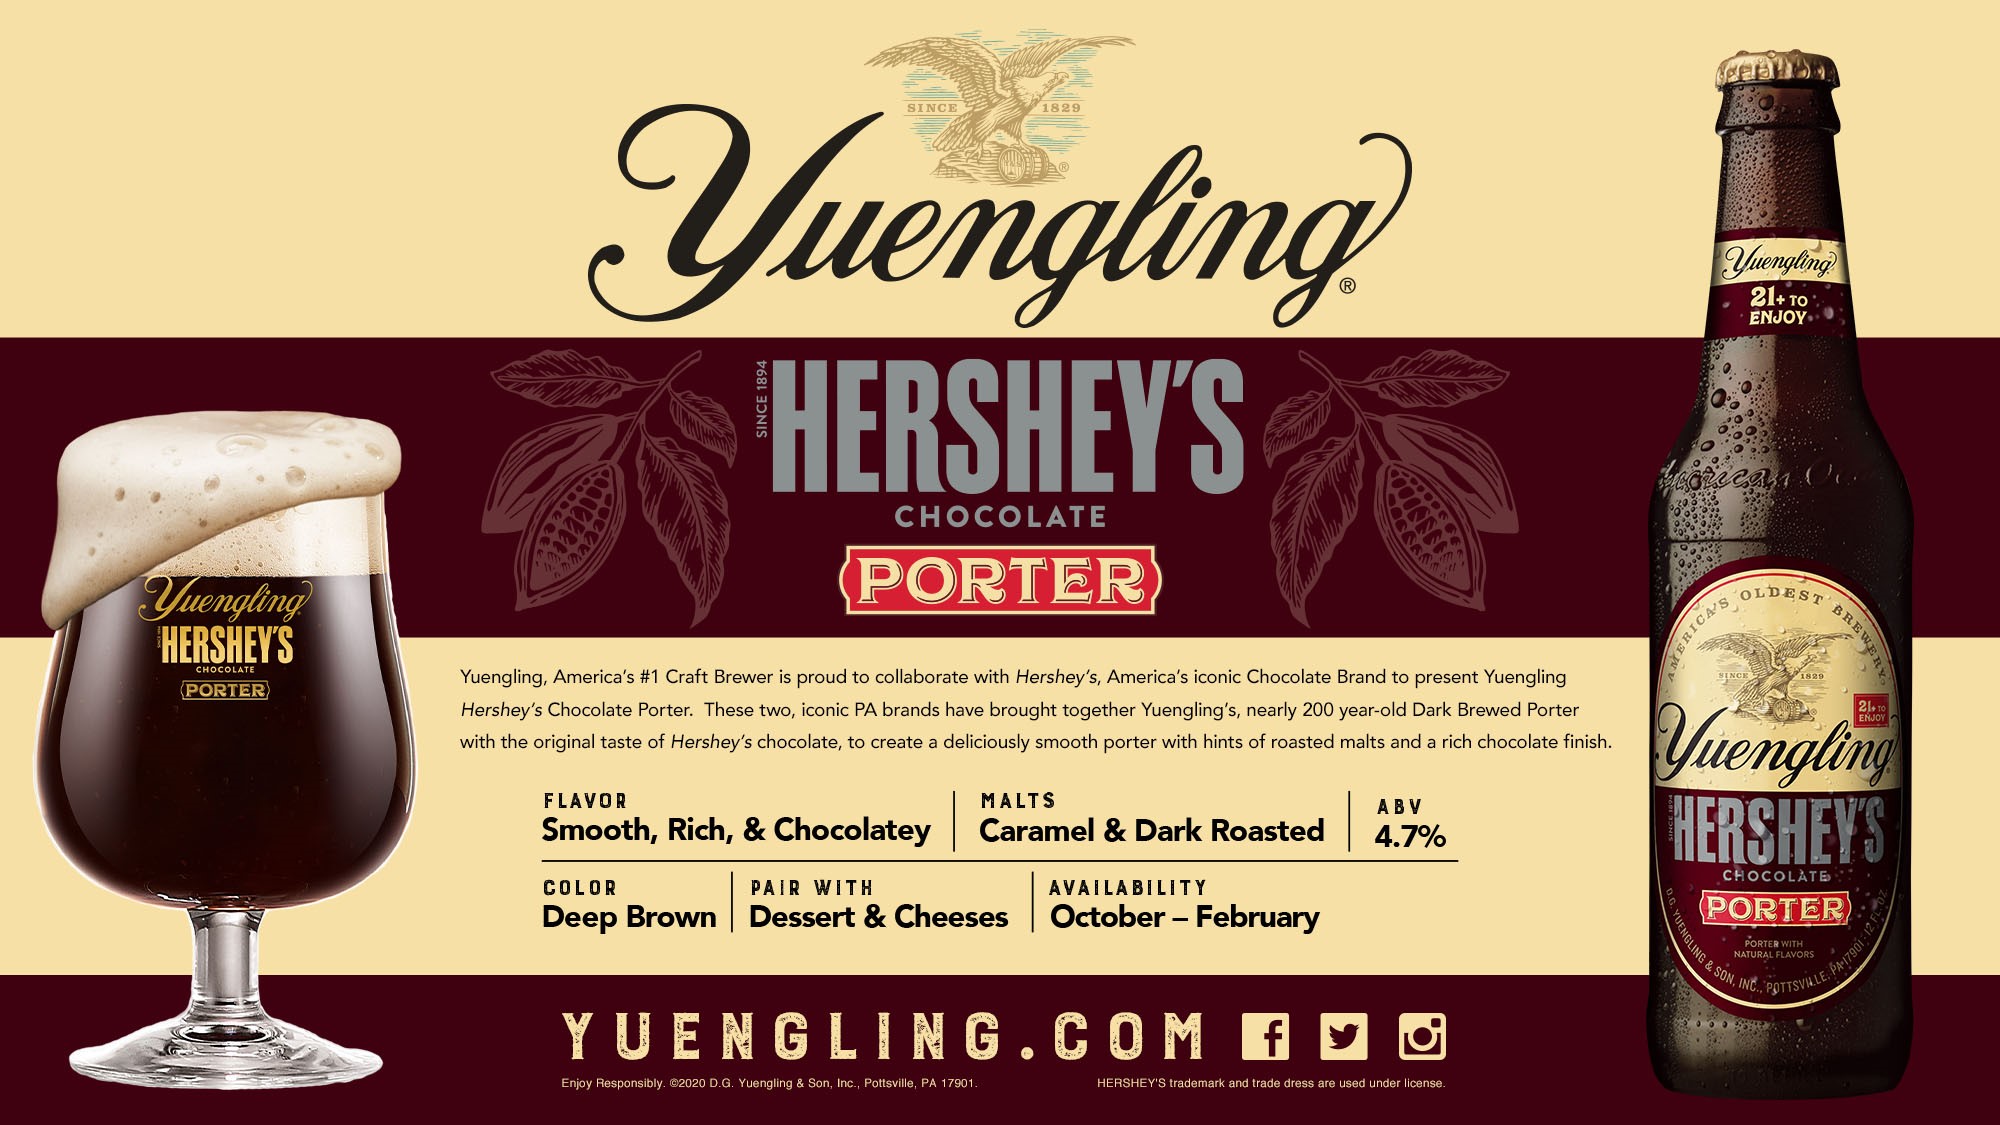 NEW! Yuengling Hershey's Chocolate Porter